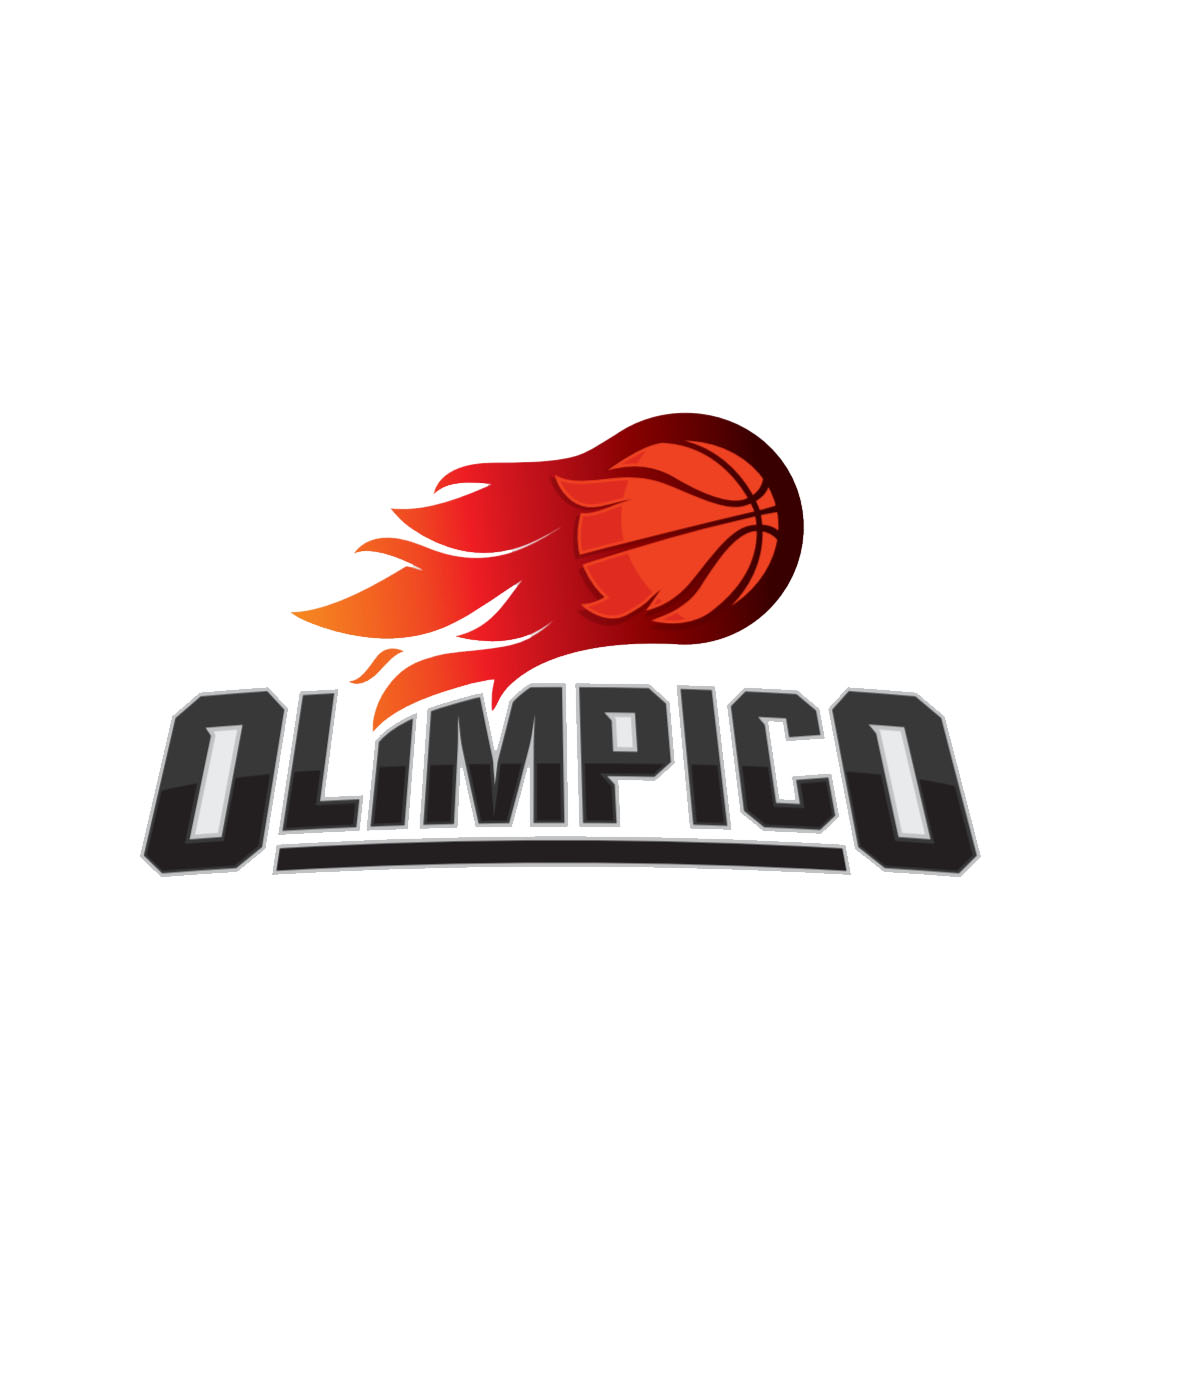 Olimpico (La Banda) - Liga Femenina